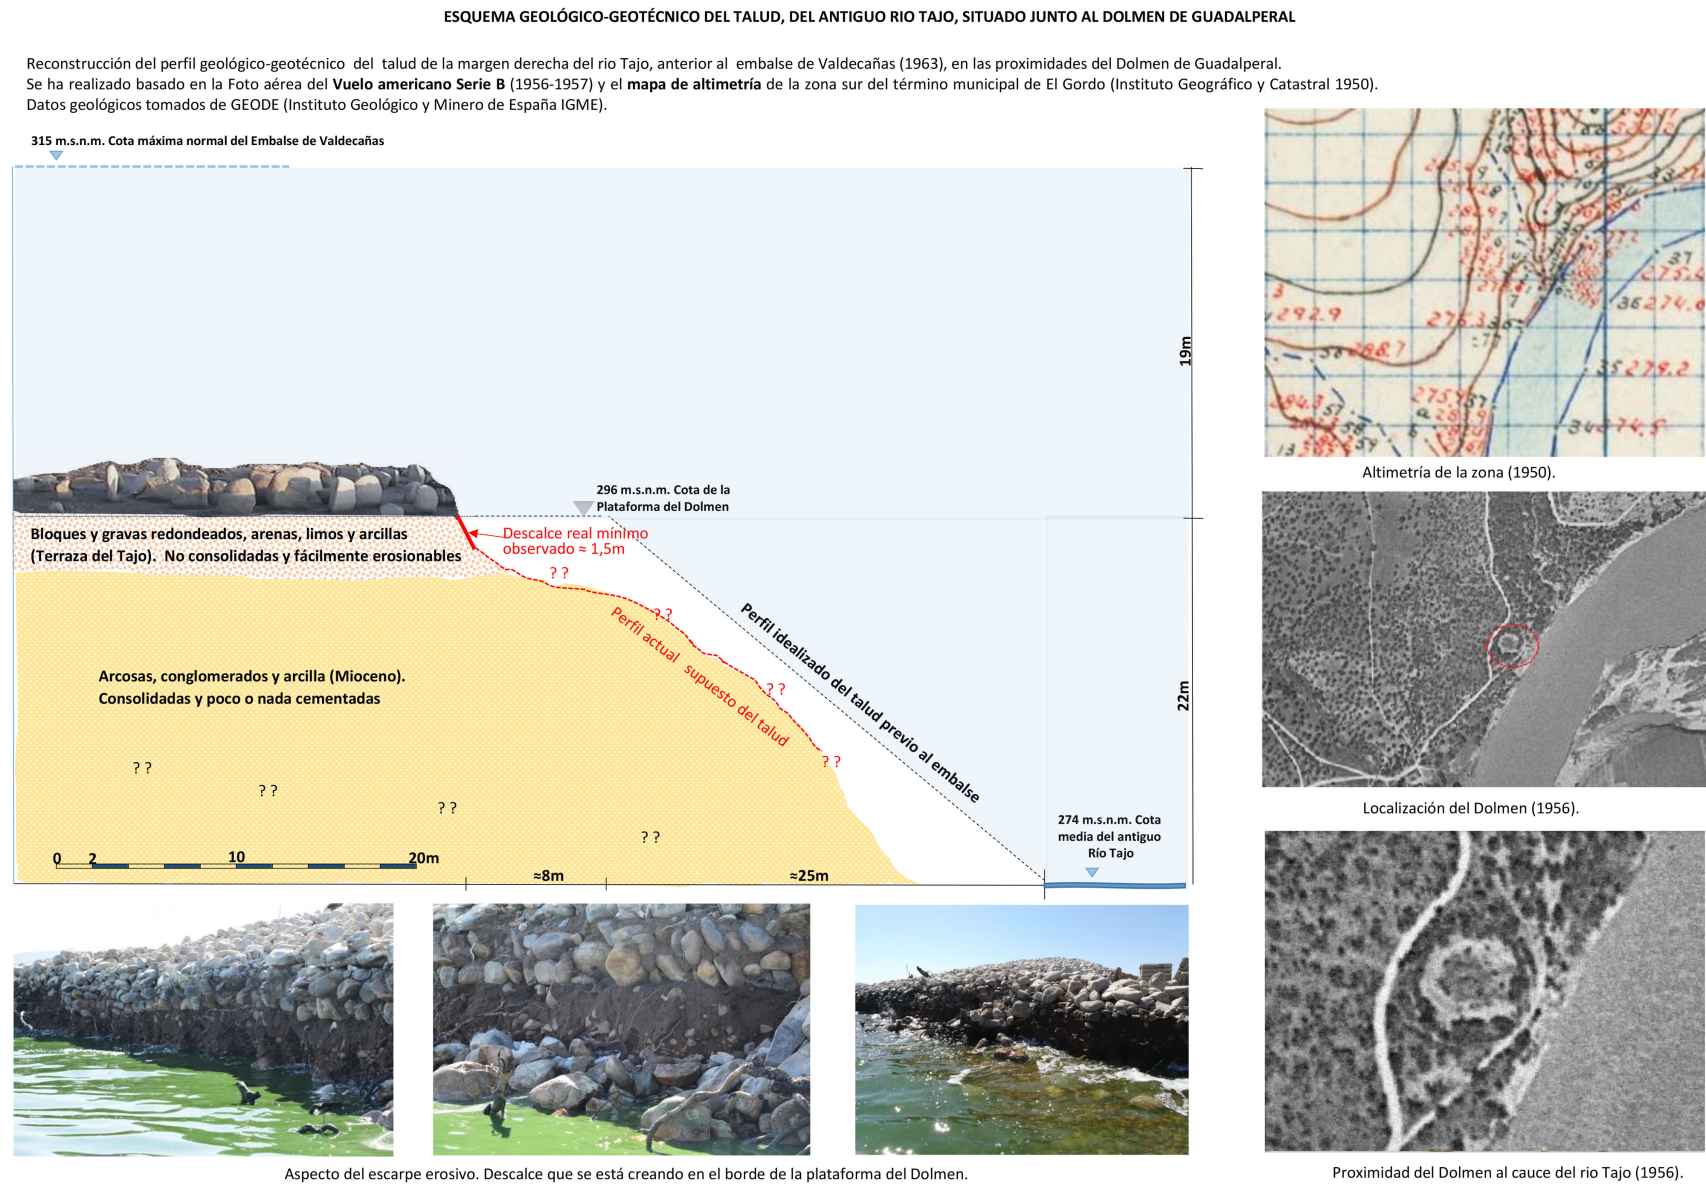 Perfil geológico del barranco del dolmen de Guadalperal y su derrumbe.